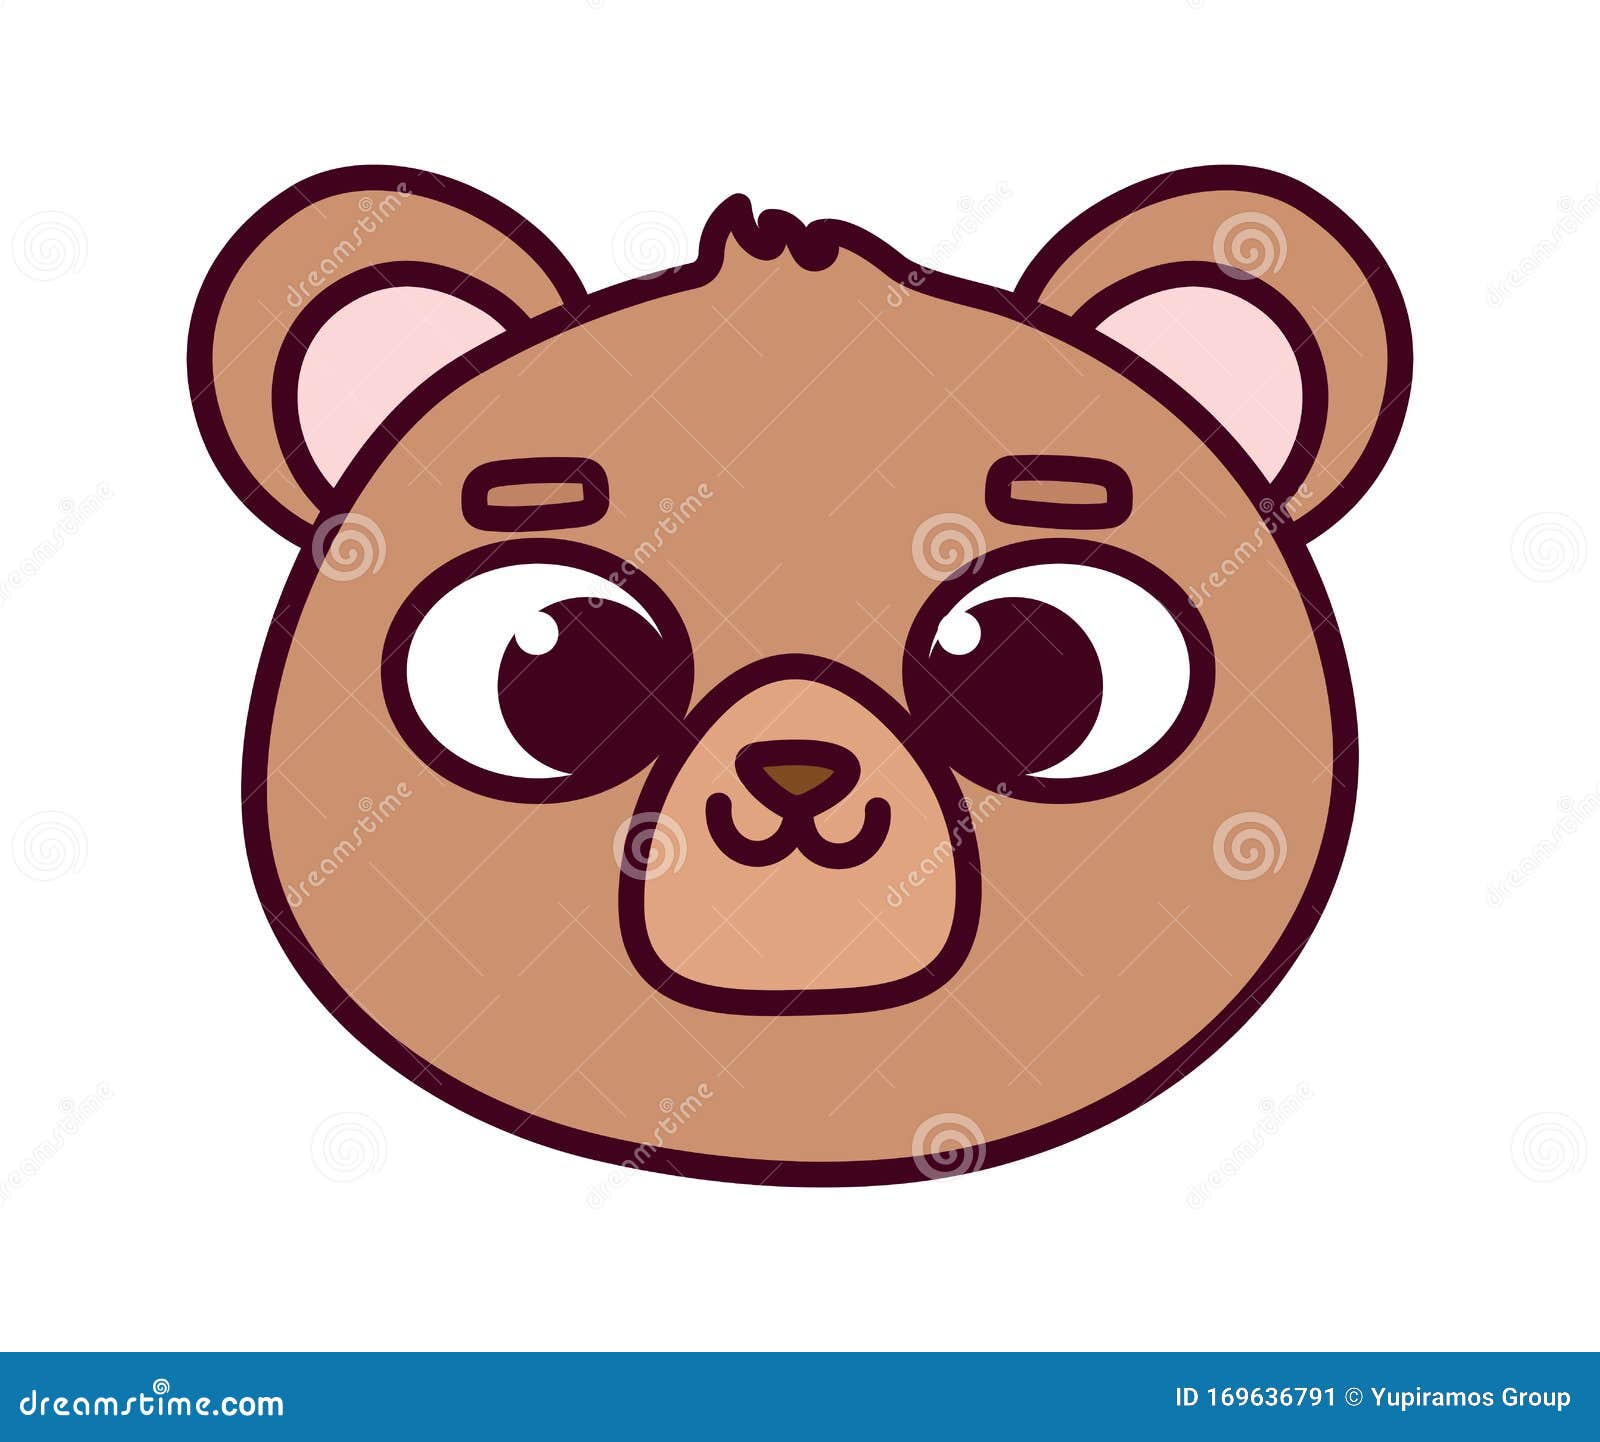 Cute Animal Little Bear Teddy Face Cartoon Icon Stock